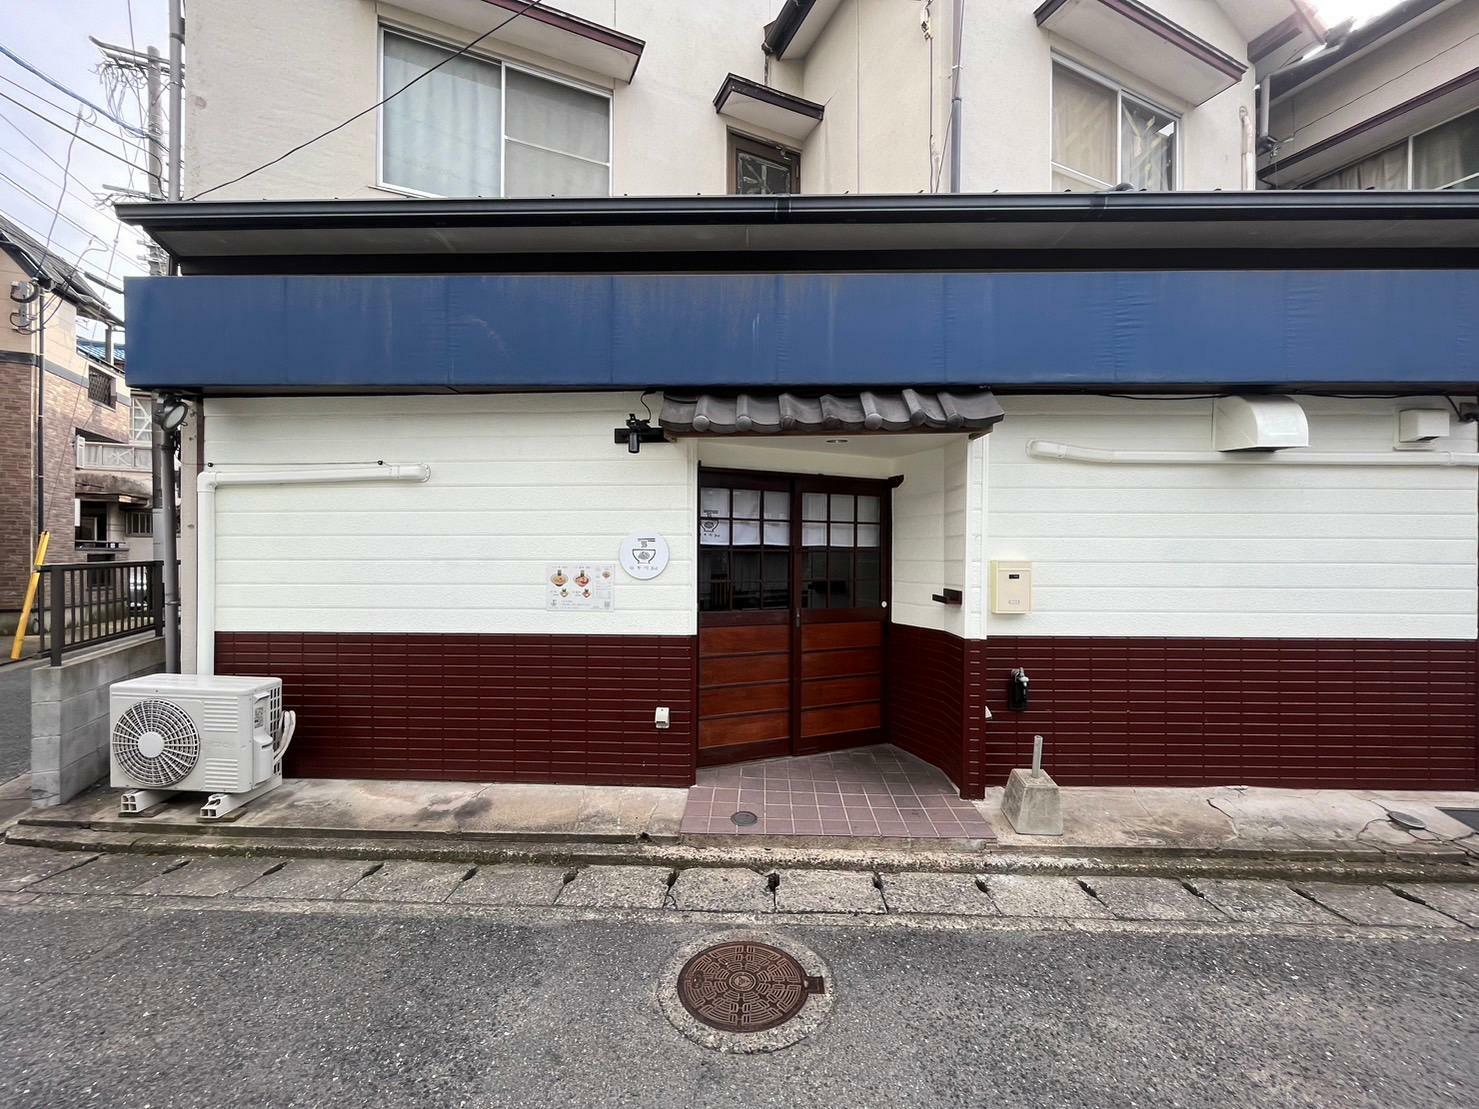 はや川 2ndの店舗は、福岡太麺 NO RAMENへ生まれ変わります